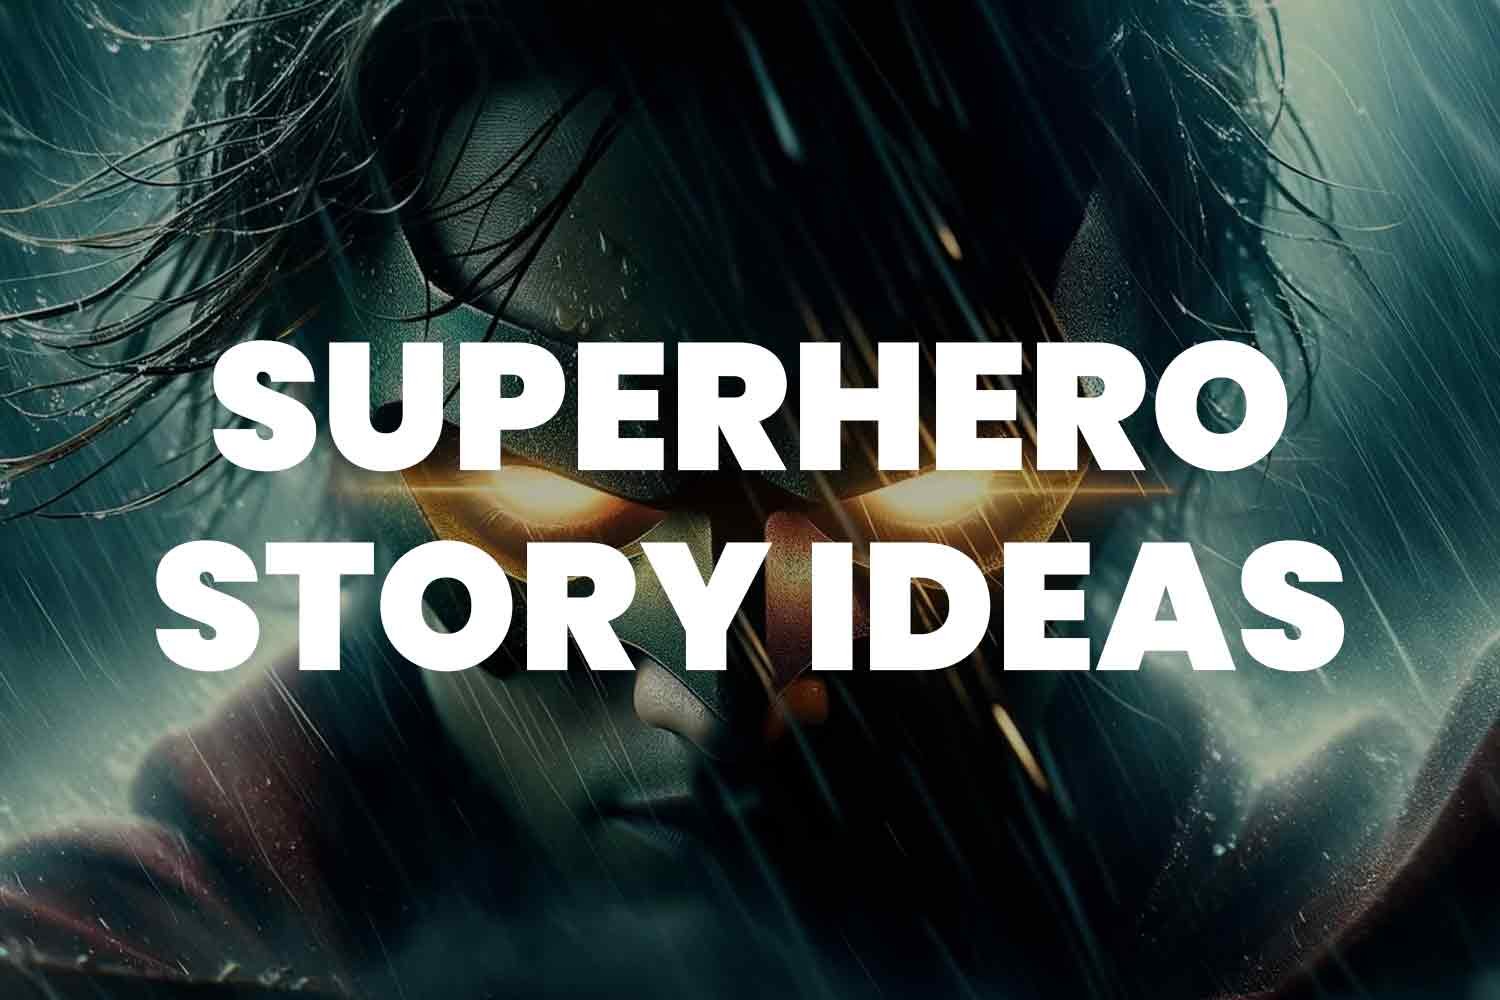 Superhero story ideas